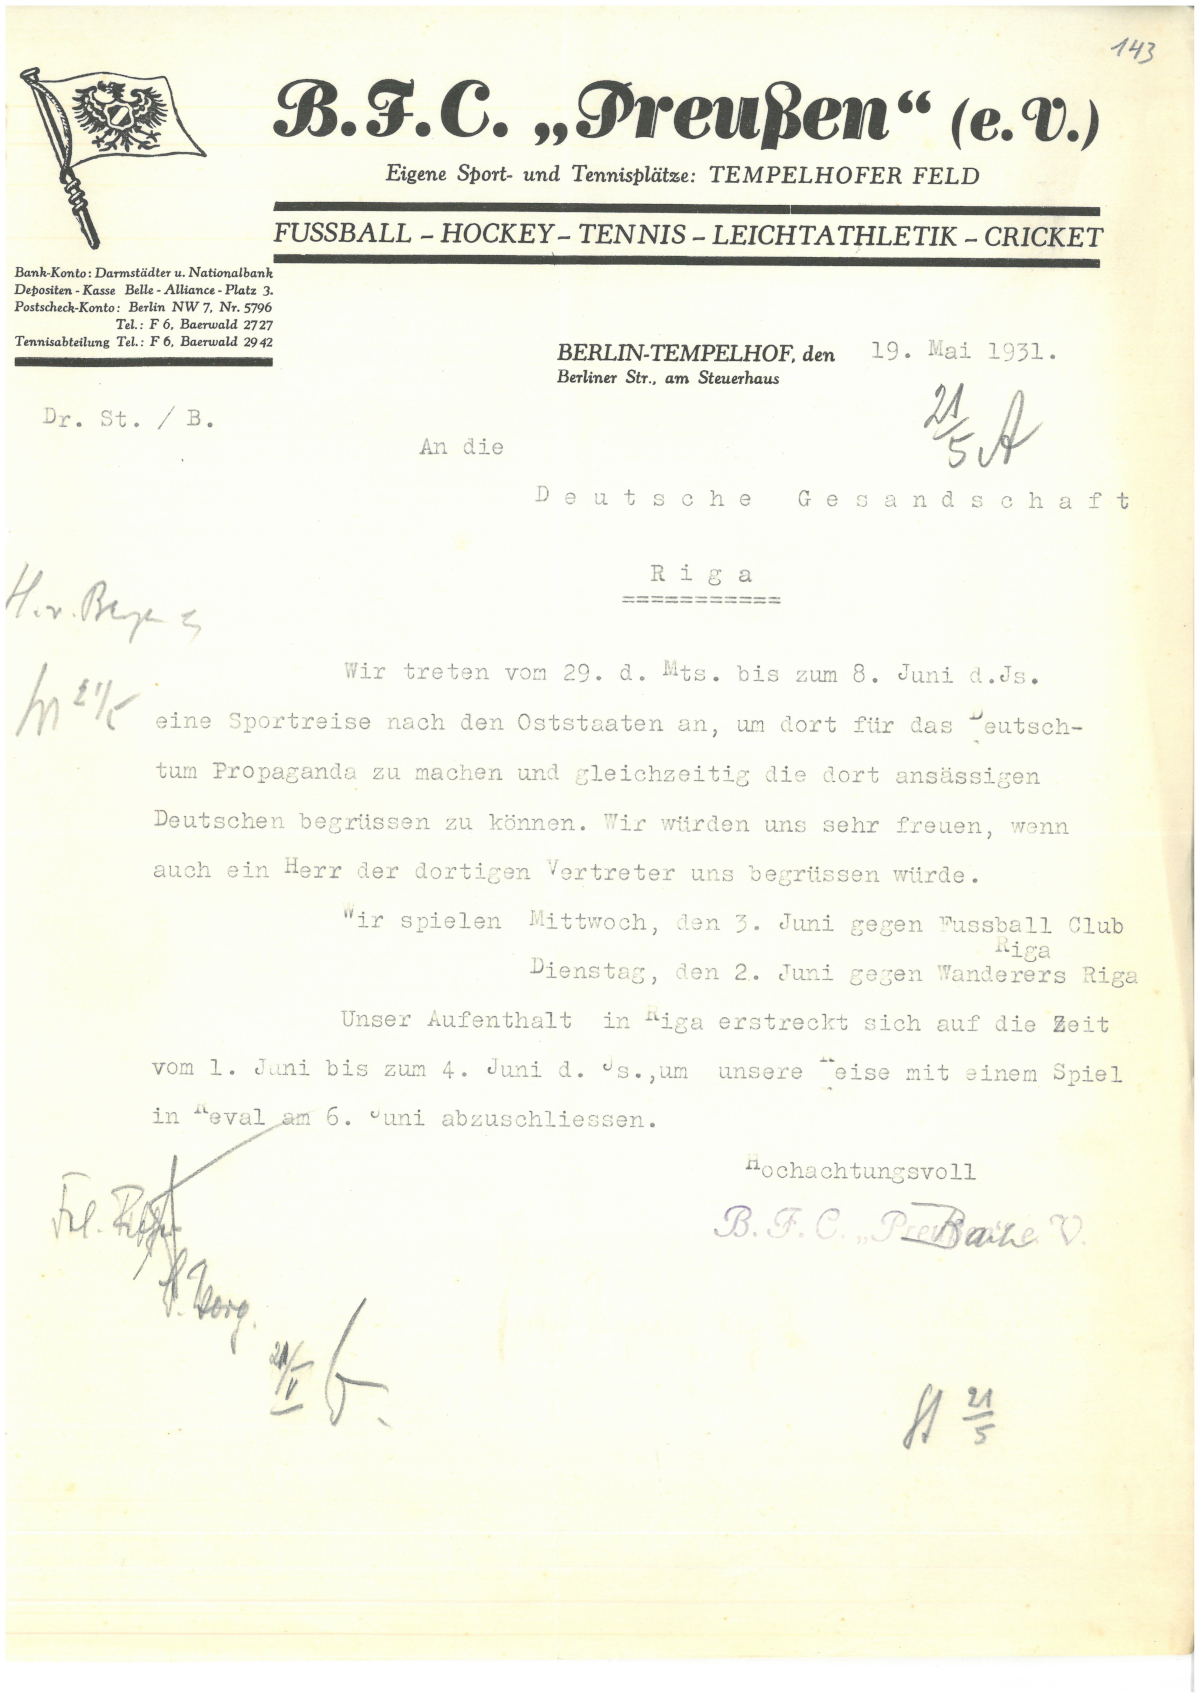 Schreiben des BFC Preußen an die Deutsche Gesandtschaft Riga vom 19. Mai 1931, Archivsignatur: PAAA RAV 222-1/102